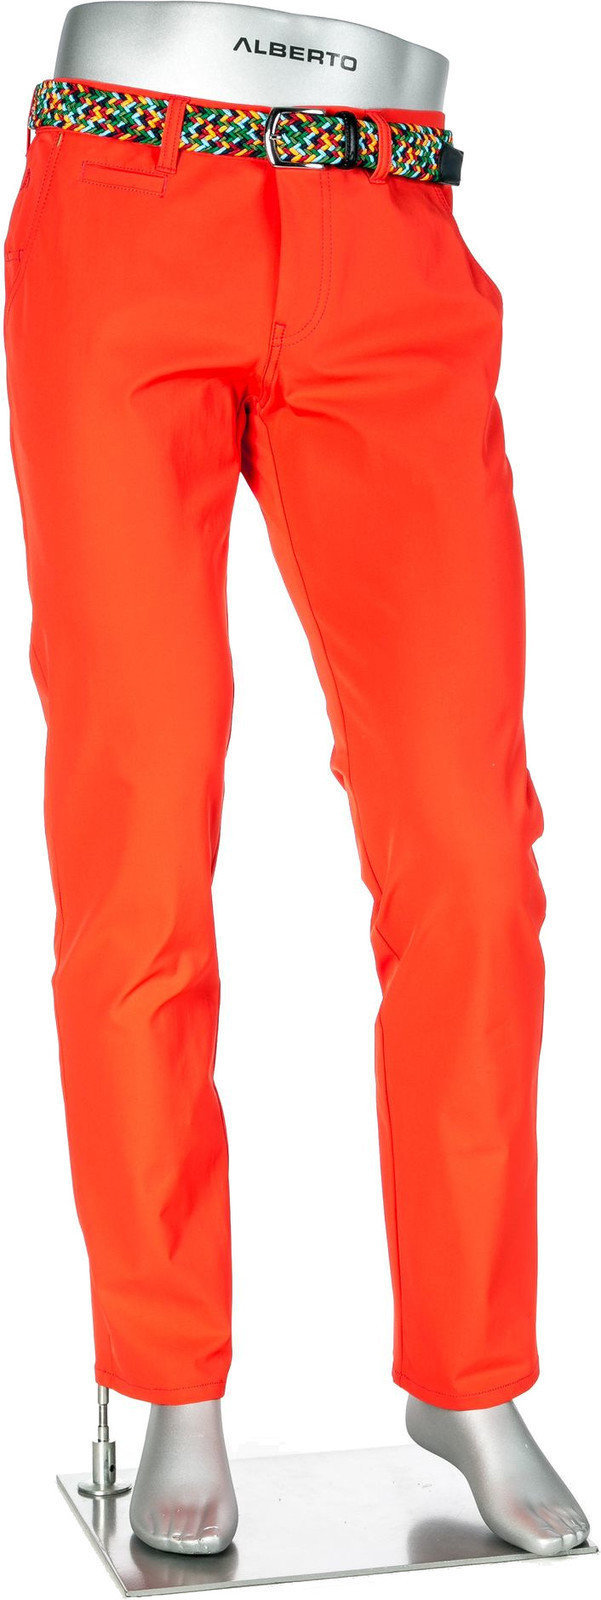 Broek Alberto Rookie 3xDRY Cooler Mens Trousers Orange 54